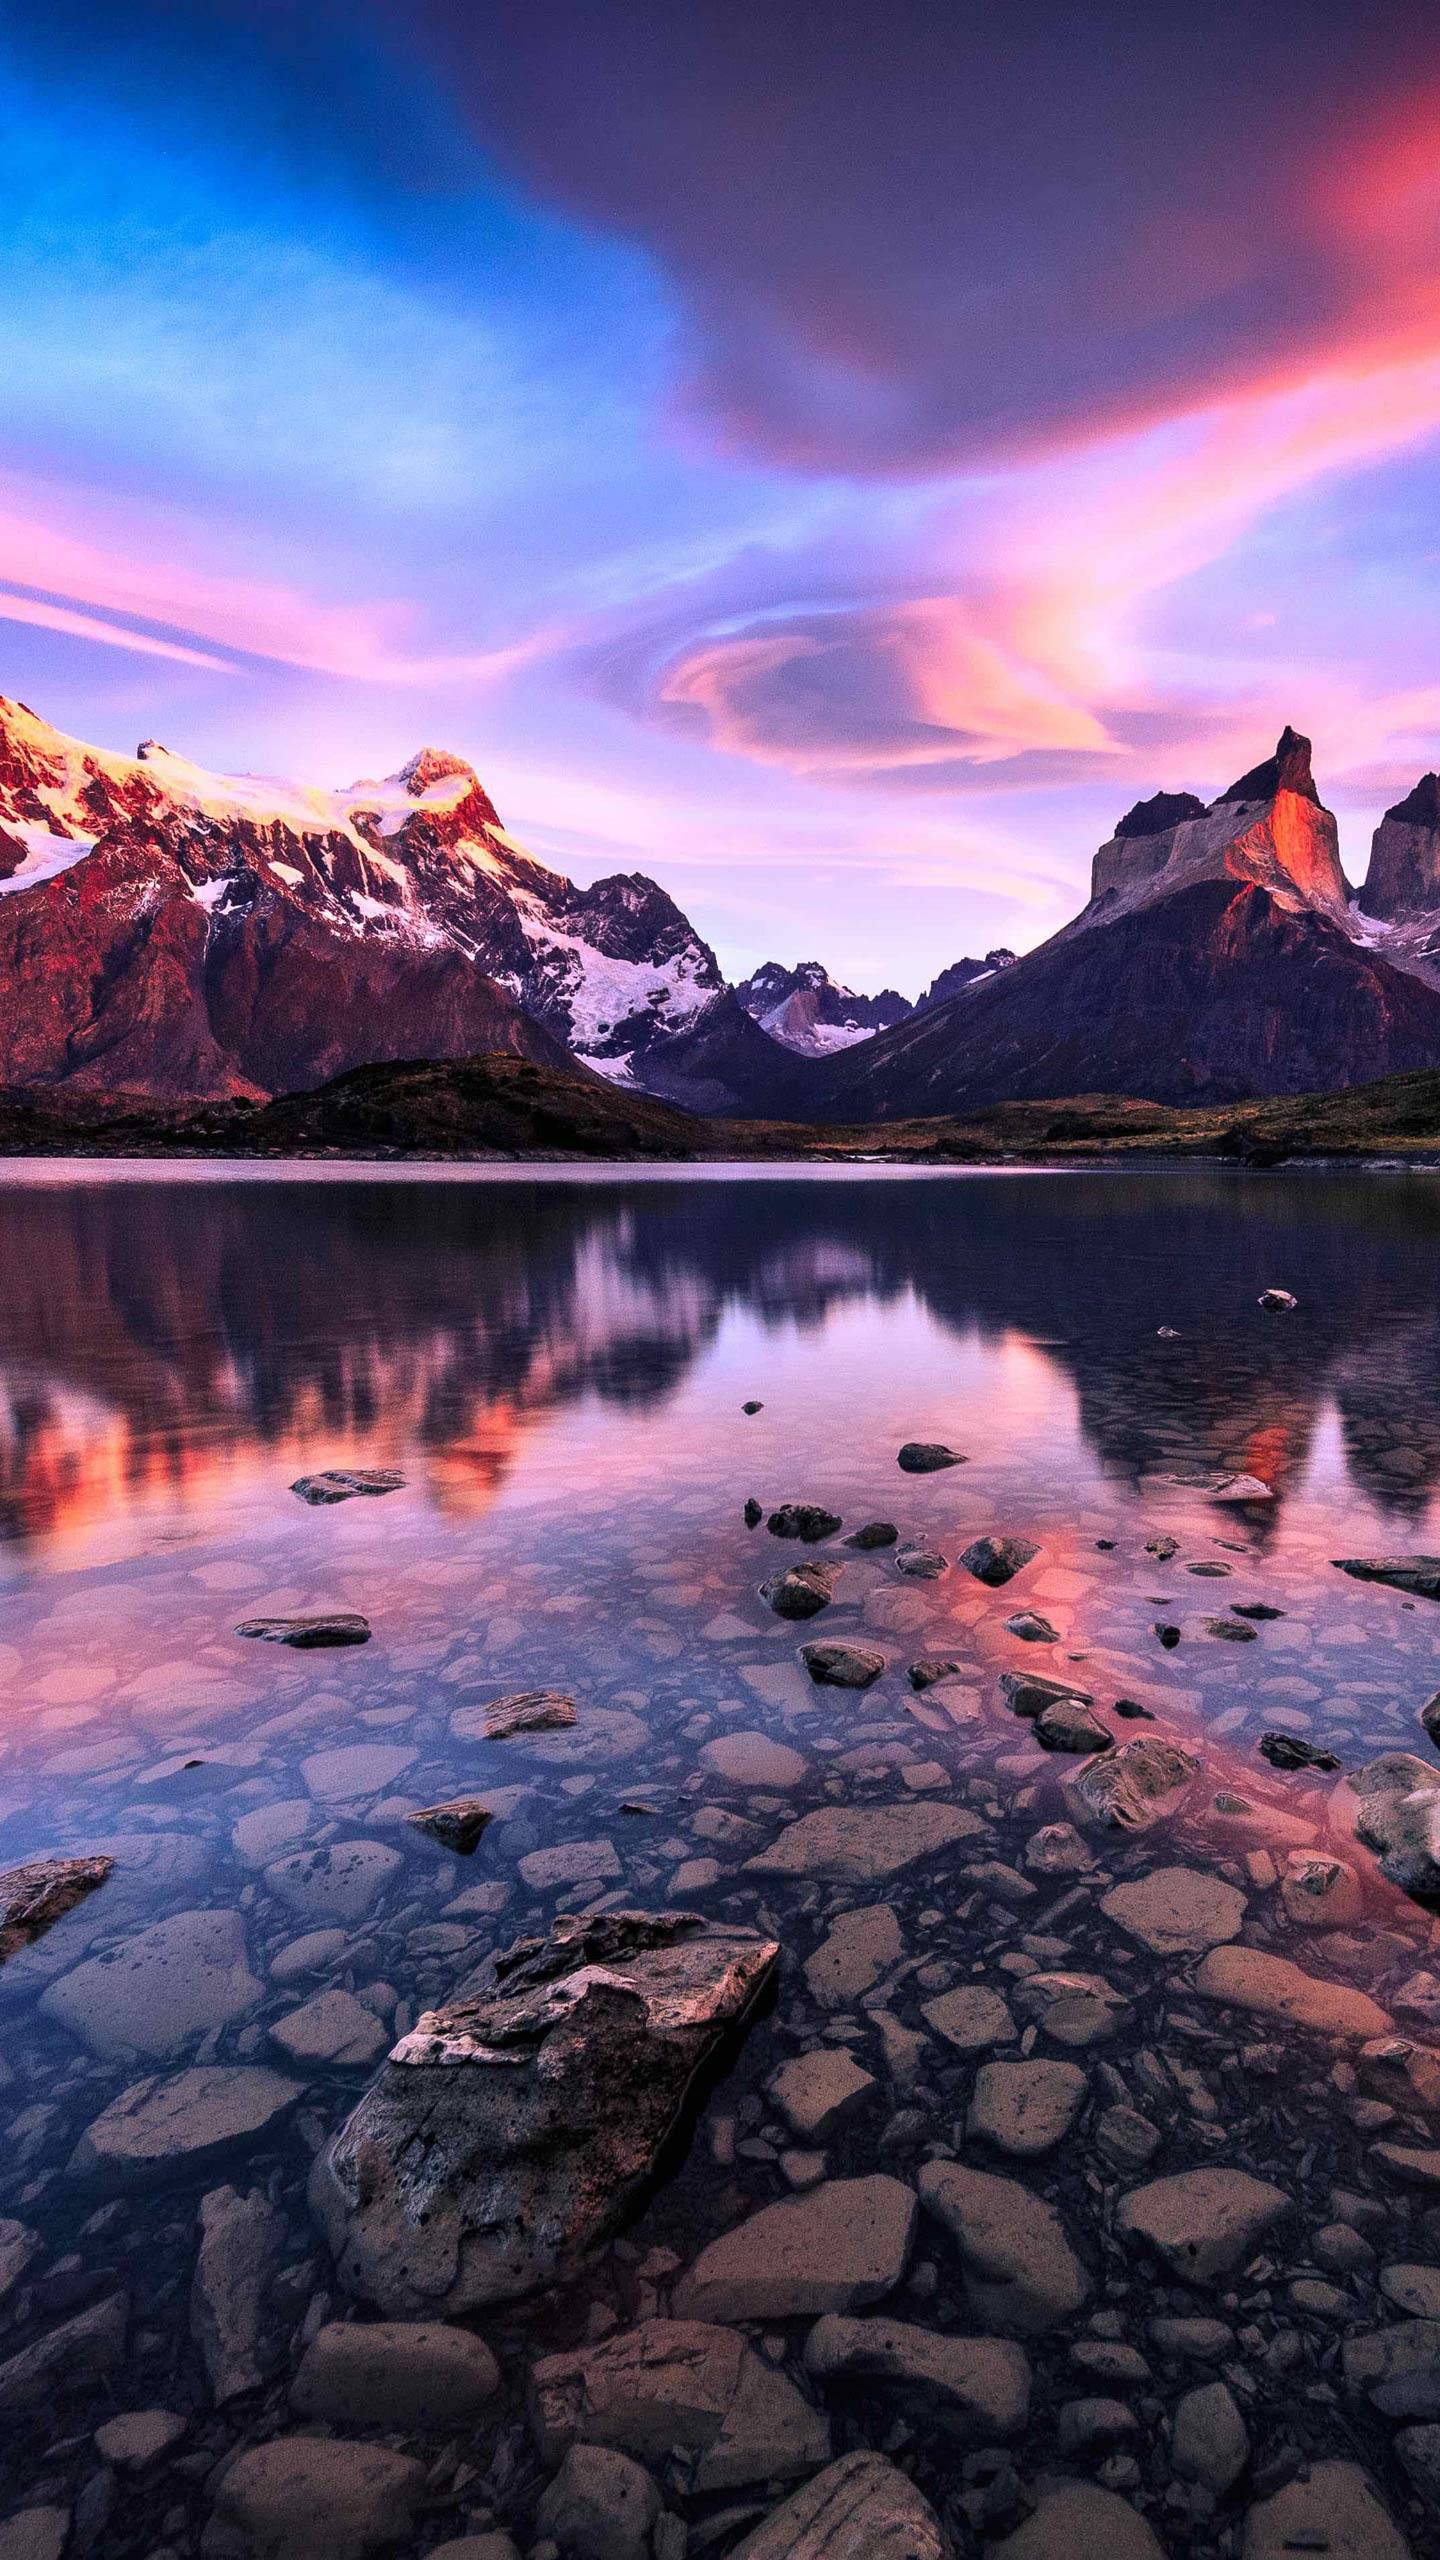 تصویر زمینه دریاچه صورتی با آب زلال روشن و کوه های برفی